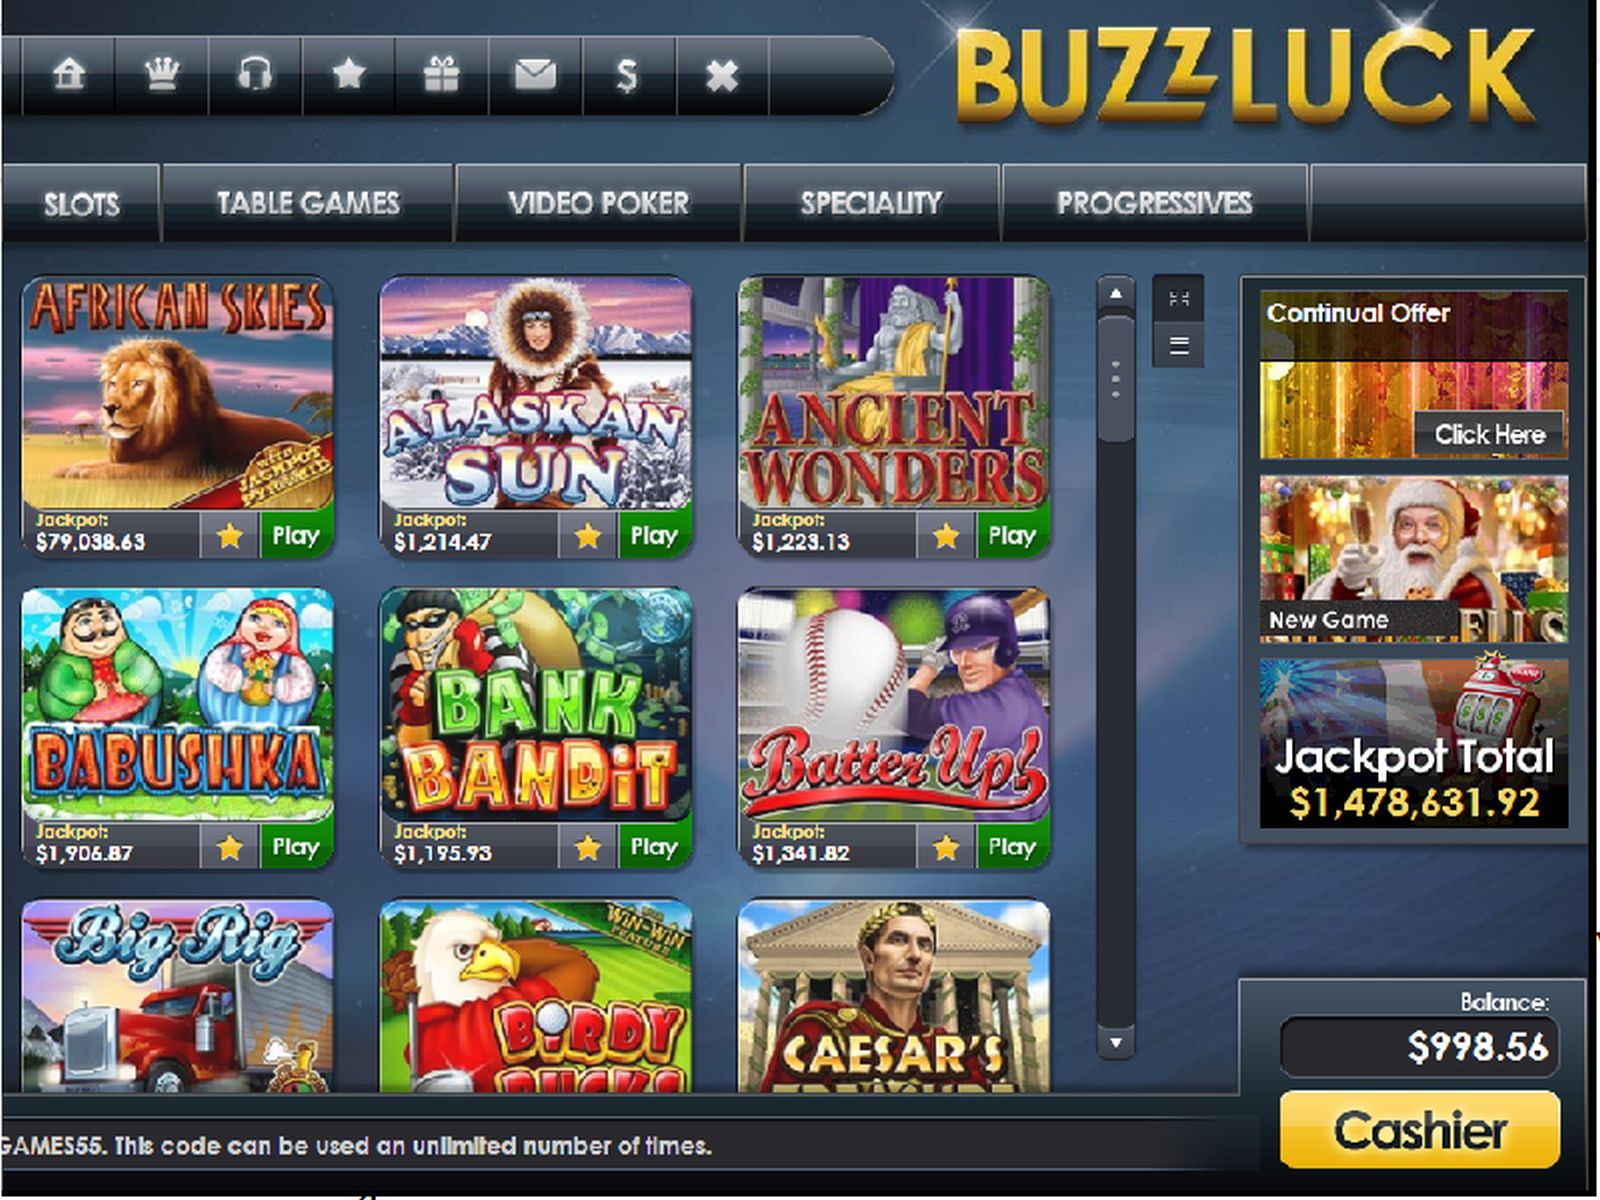 Buzzluck Online Casino Online Casino